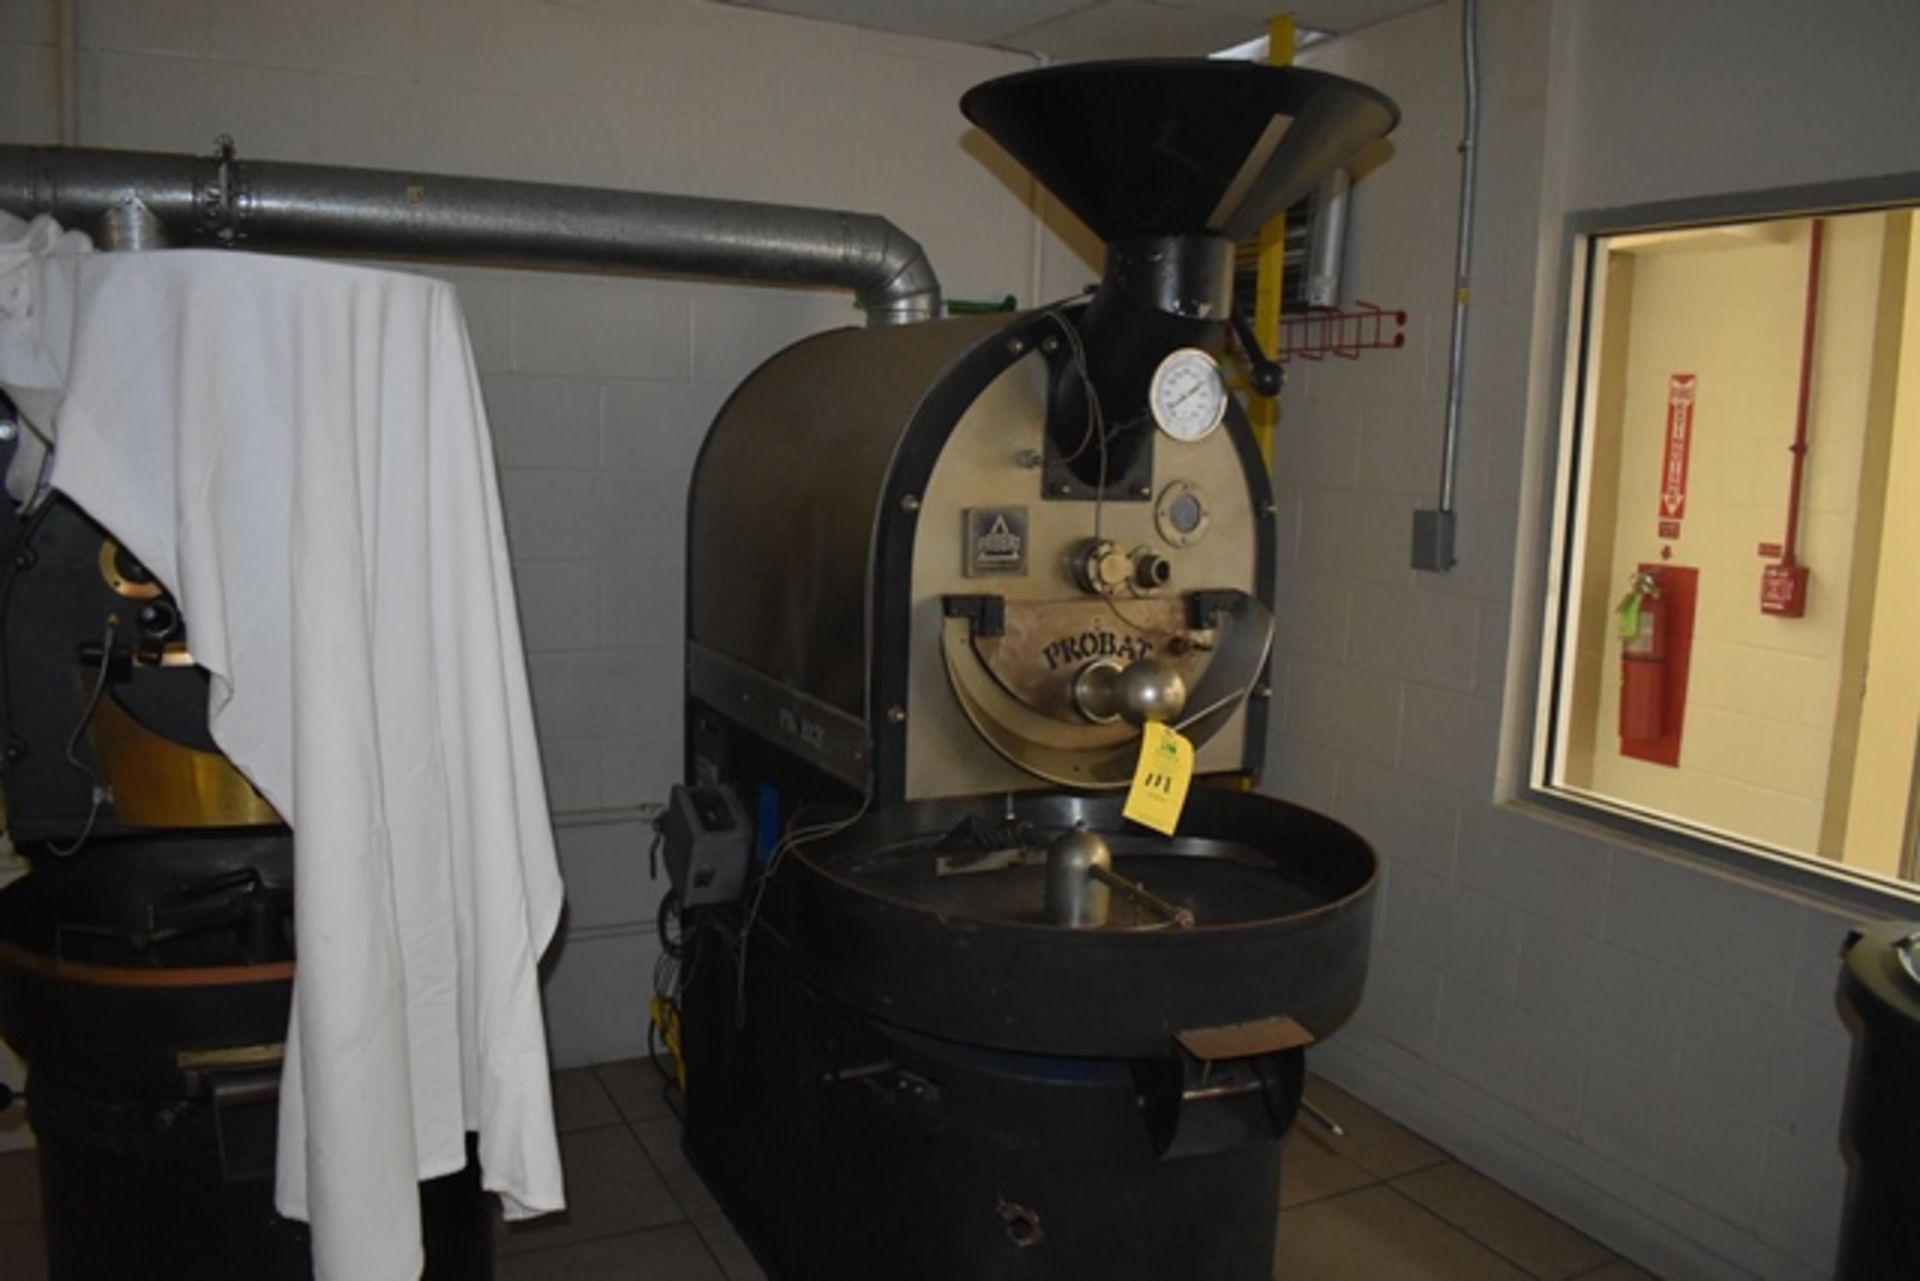 Probat coffee roaster, model L12, s/n 924011, 110 V, single phase, 60 Hz, 12 V, natural gas, 96000